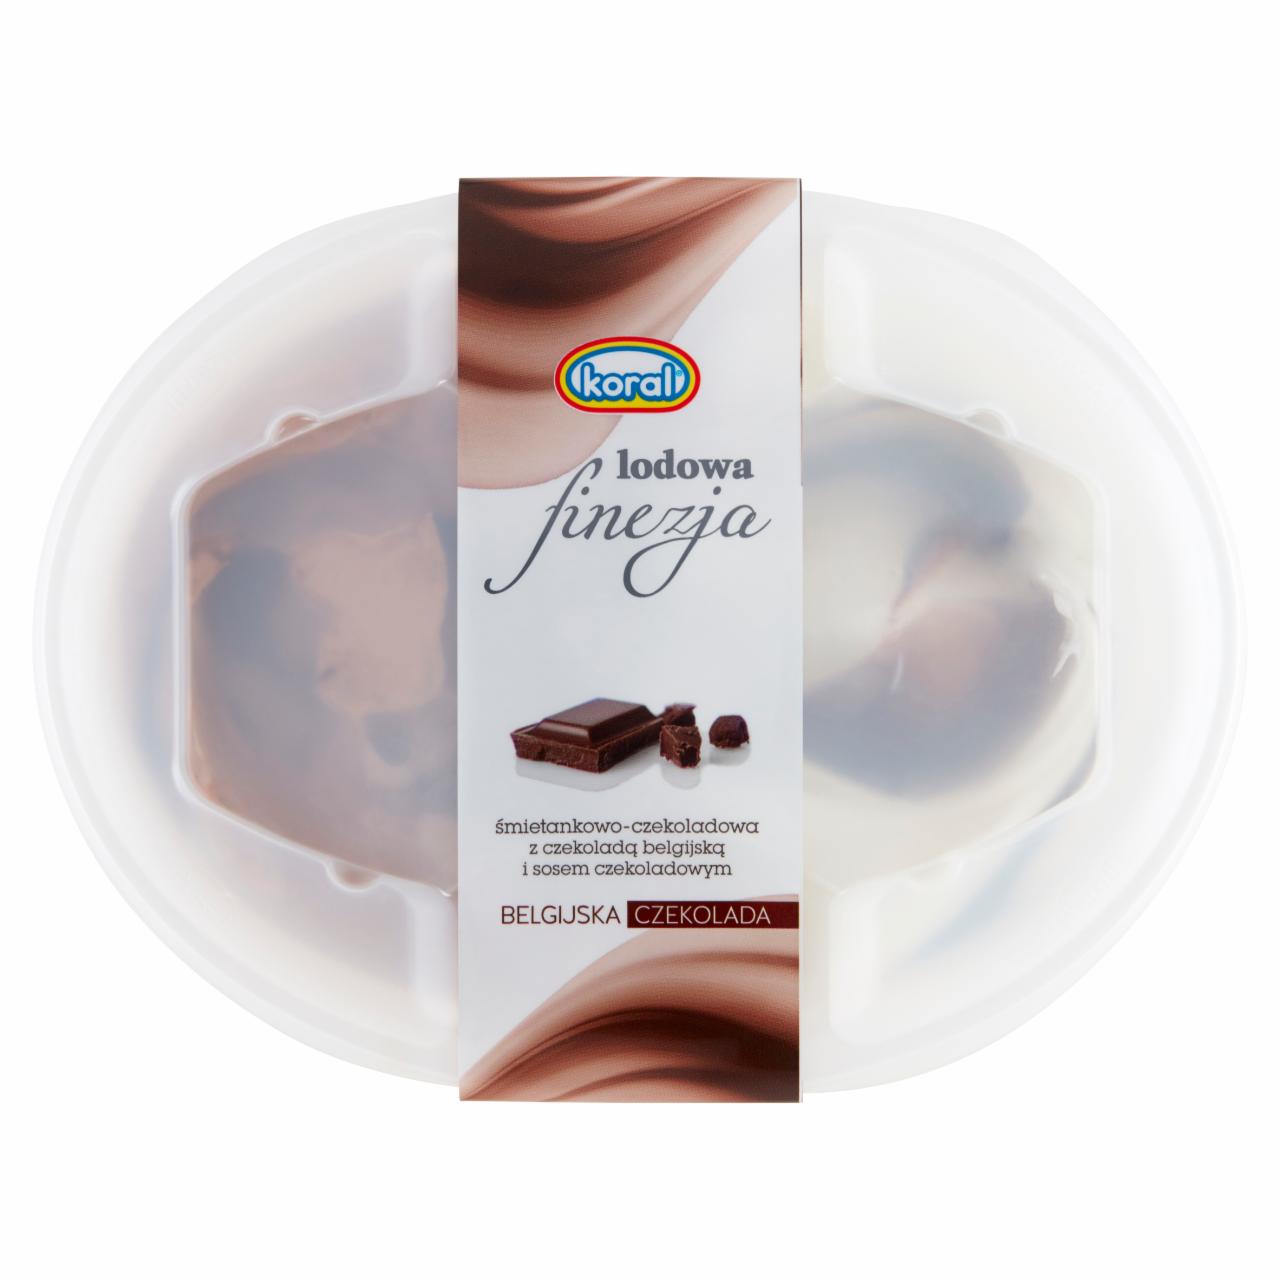 Zdjęcia - Koral Lodowa finezja Lody śmietankowo-czekoladowe z belgijską czekoladą i sosem czekoladowym 1 l